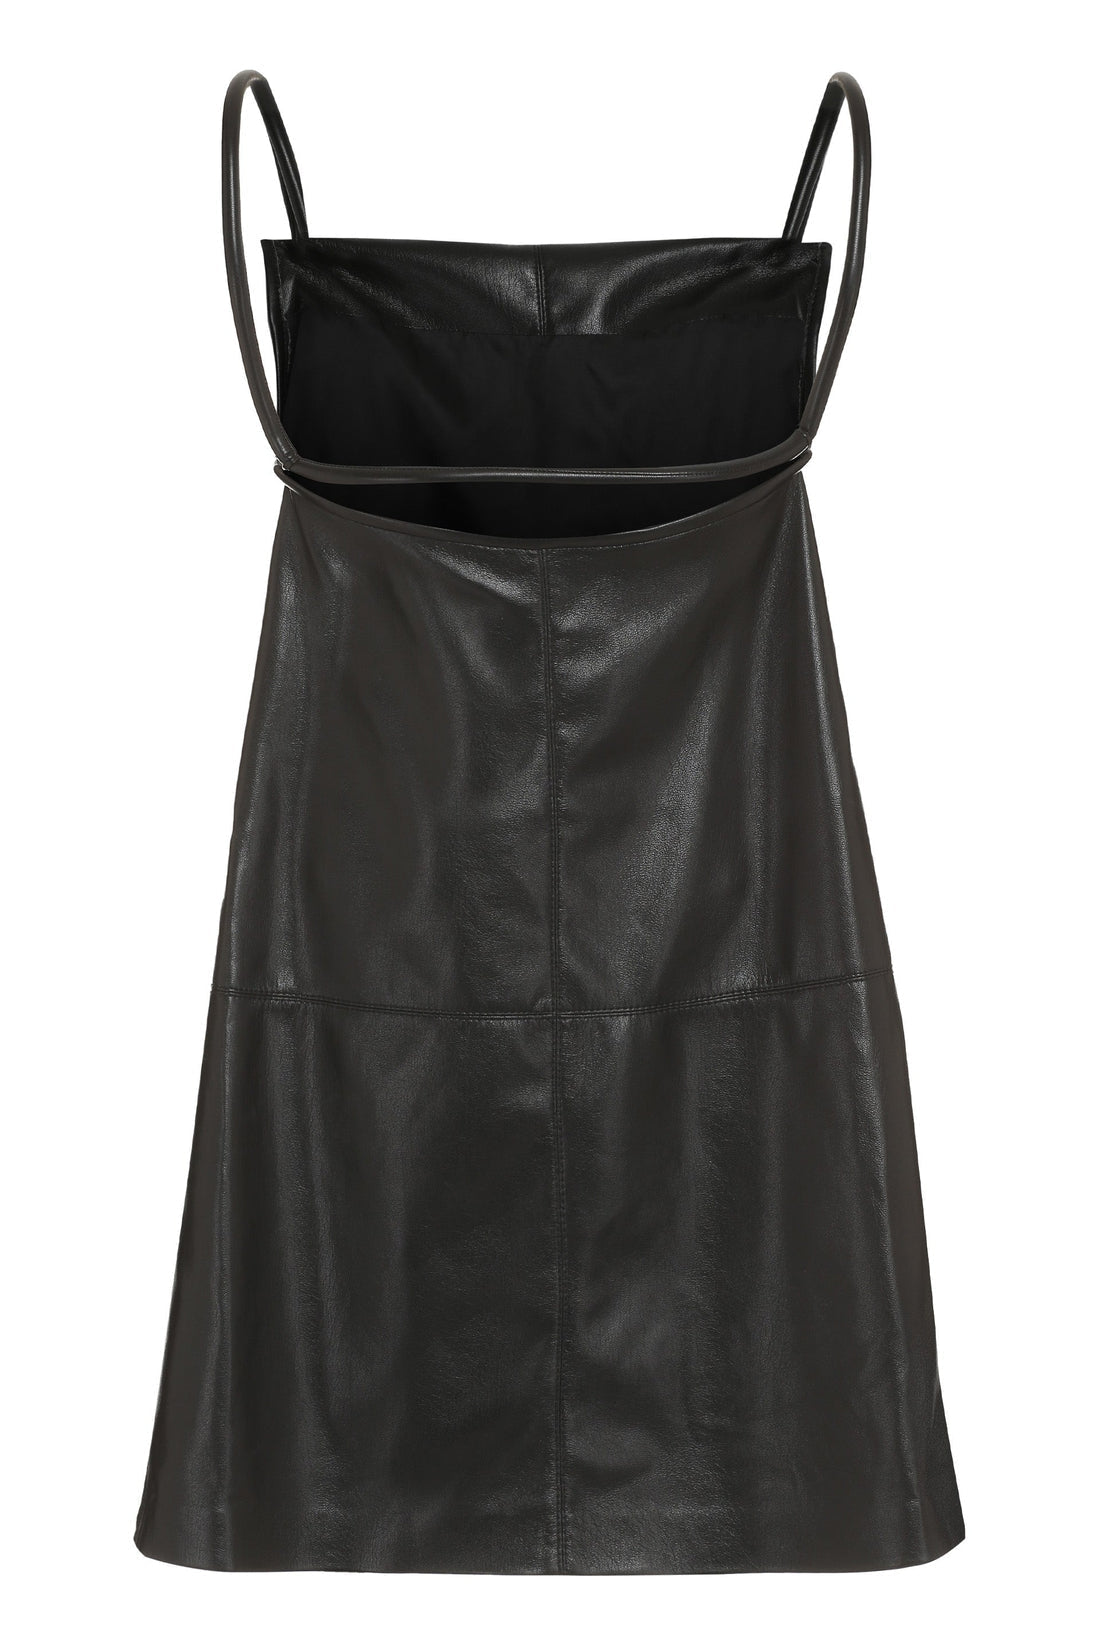 Nanushka-OUTLET-SALE-Claire vegan leather dress-ARCHIVIST